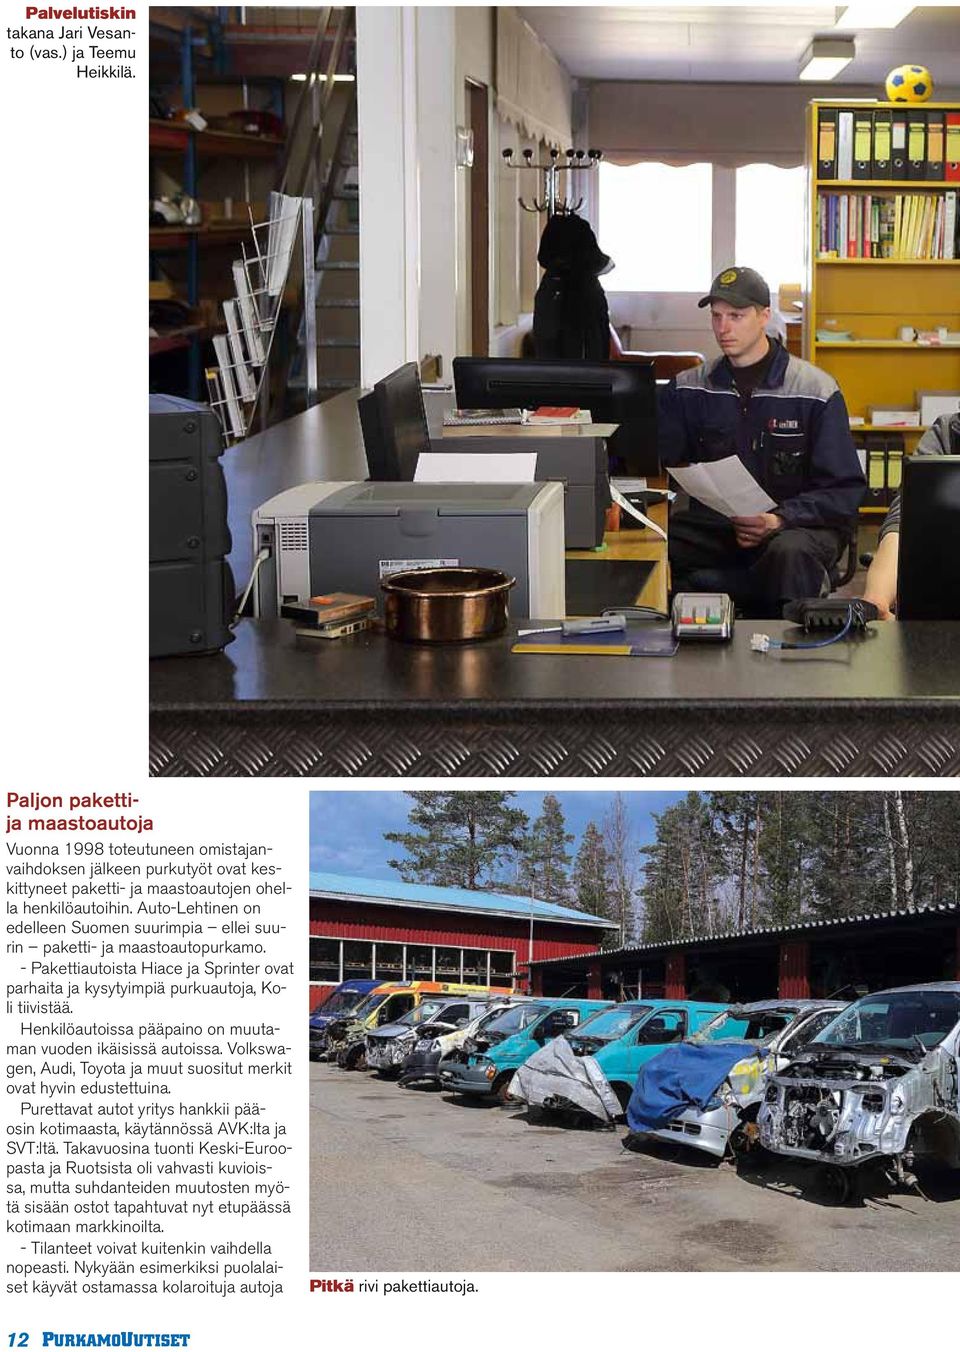 Auto-Lehtinen on edelleen Suomen suurimpia ellei suurin paketti- ja maastoautopurkamo. - Pakettiautoista Hiace ja Sprinter ovat parhaita ja kysytyimpiä purkuautoja, Koli tiivistää.